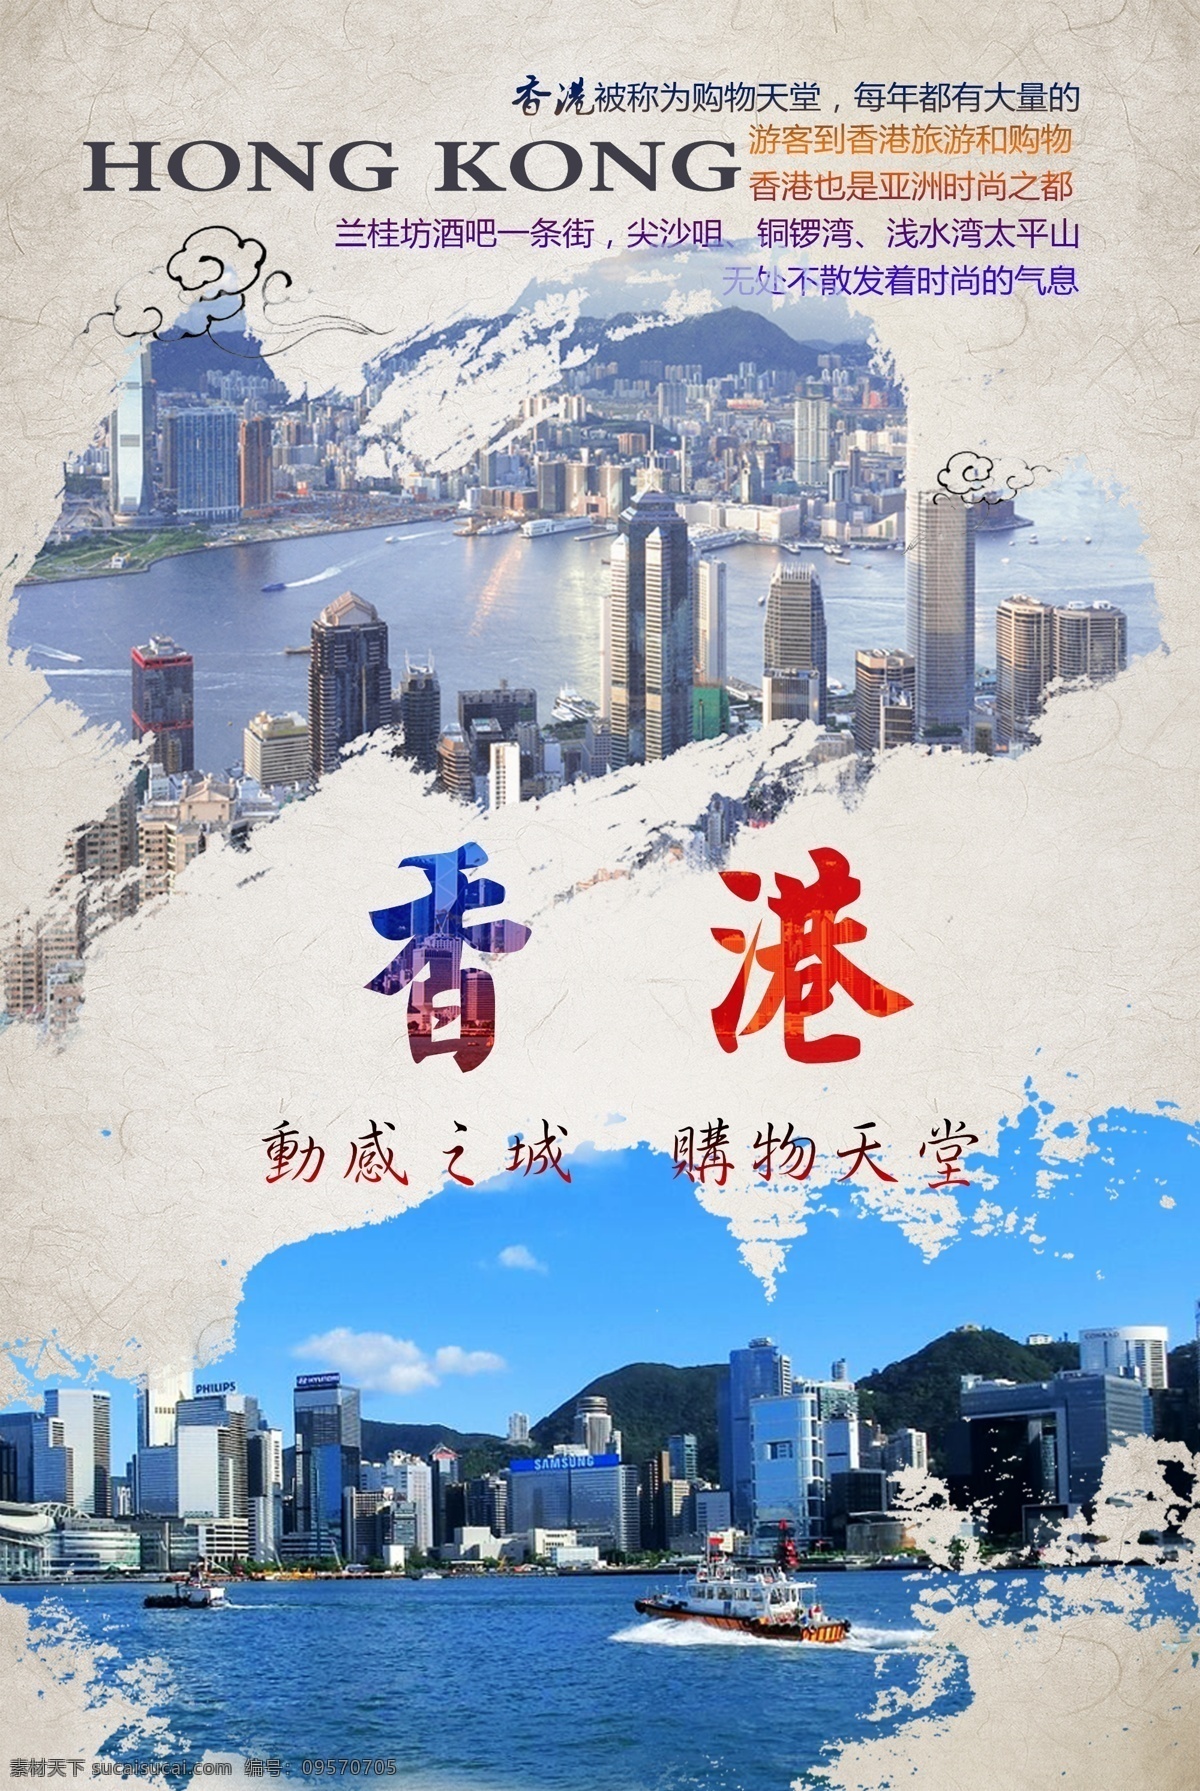 香港旅游海报 香港 香港图片 香港旅游 旅行社海报 旅游海报 风景海报